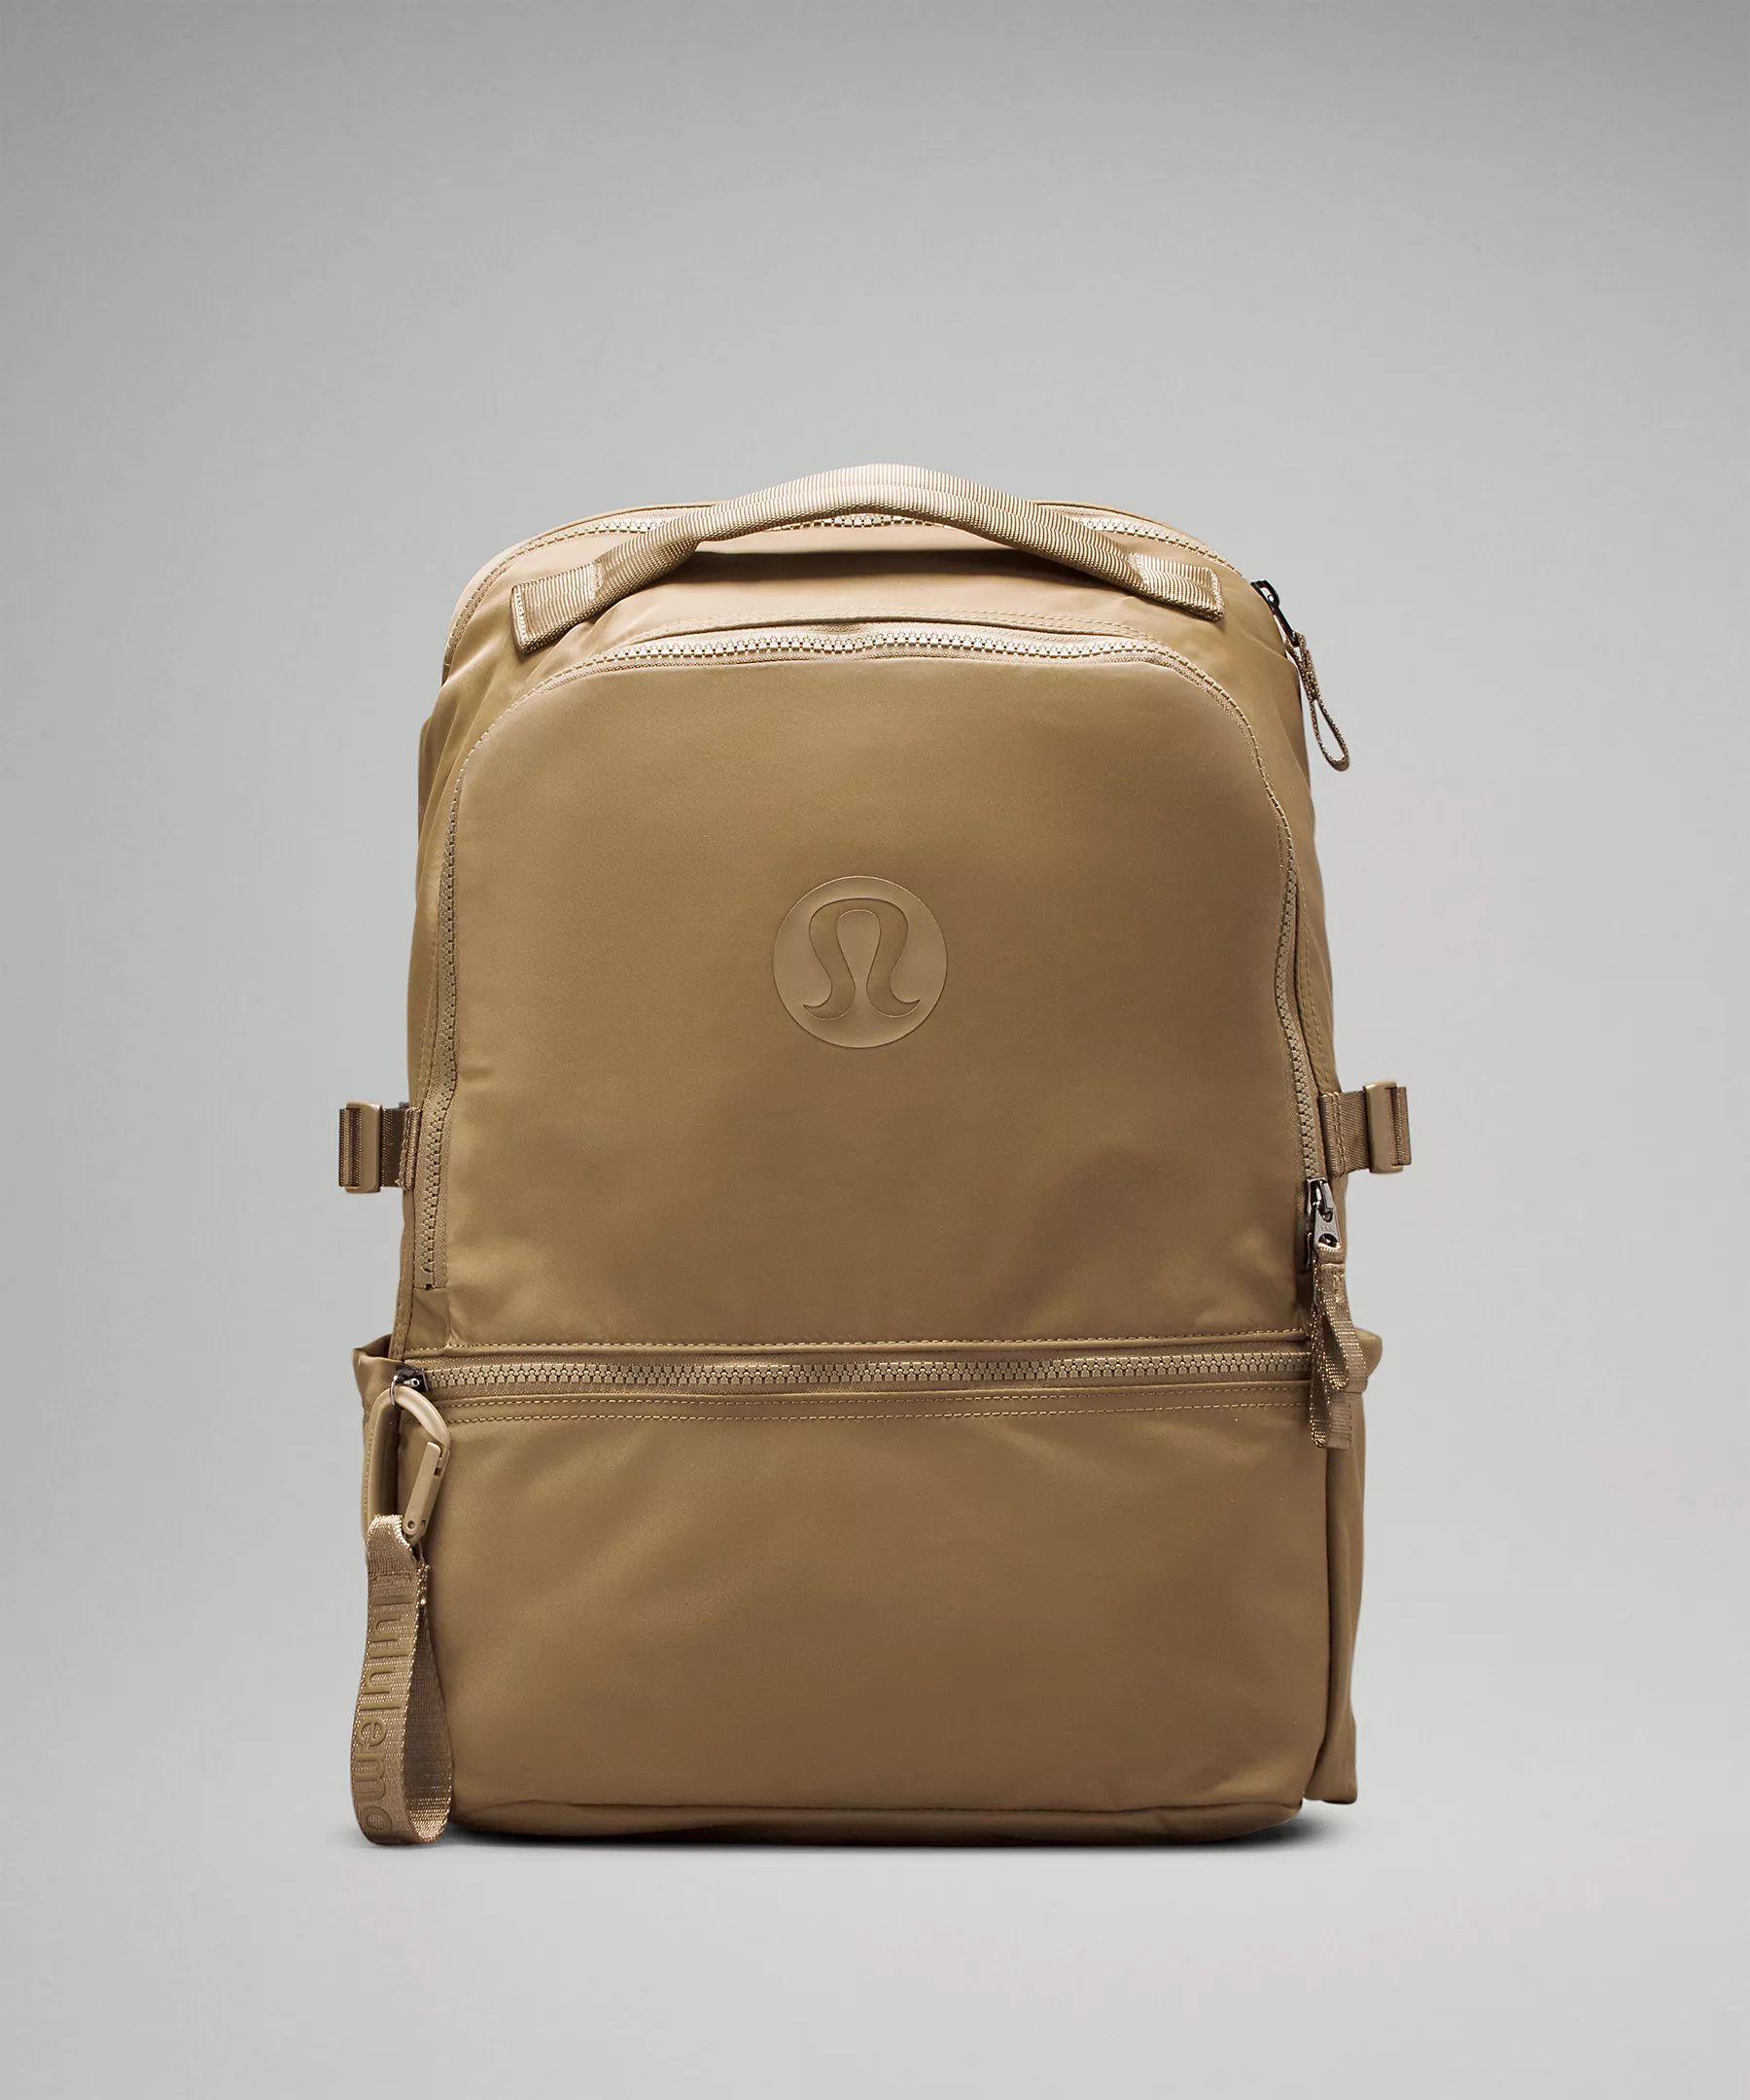 New Crew Backpack 22L | Unisex Bags,Purses,Wallets | lululemon | Lululemon (US)